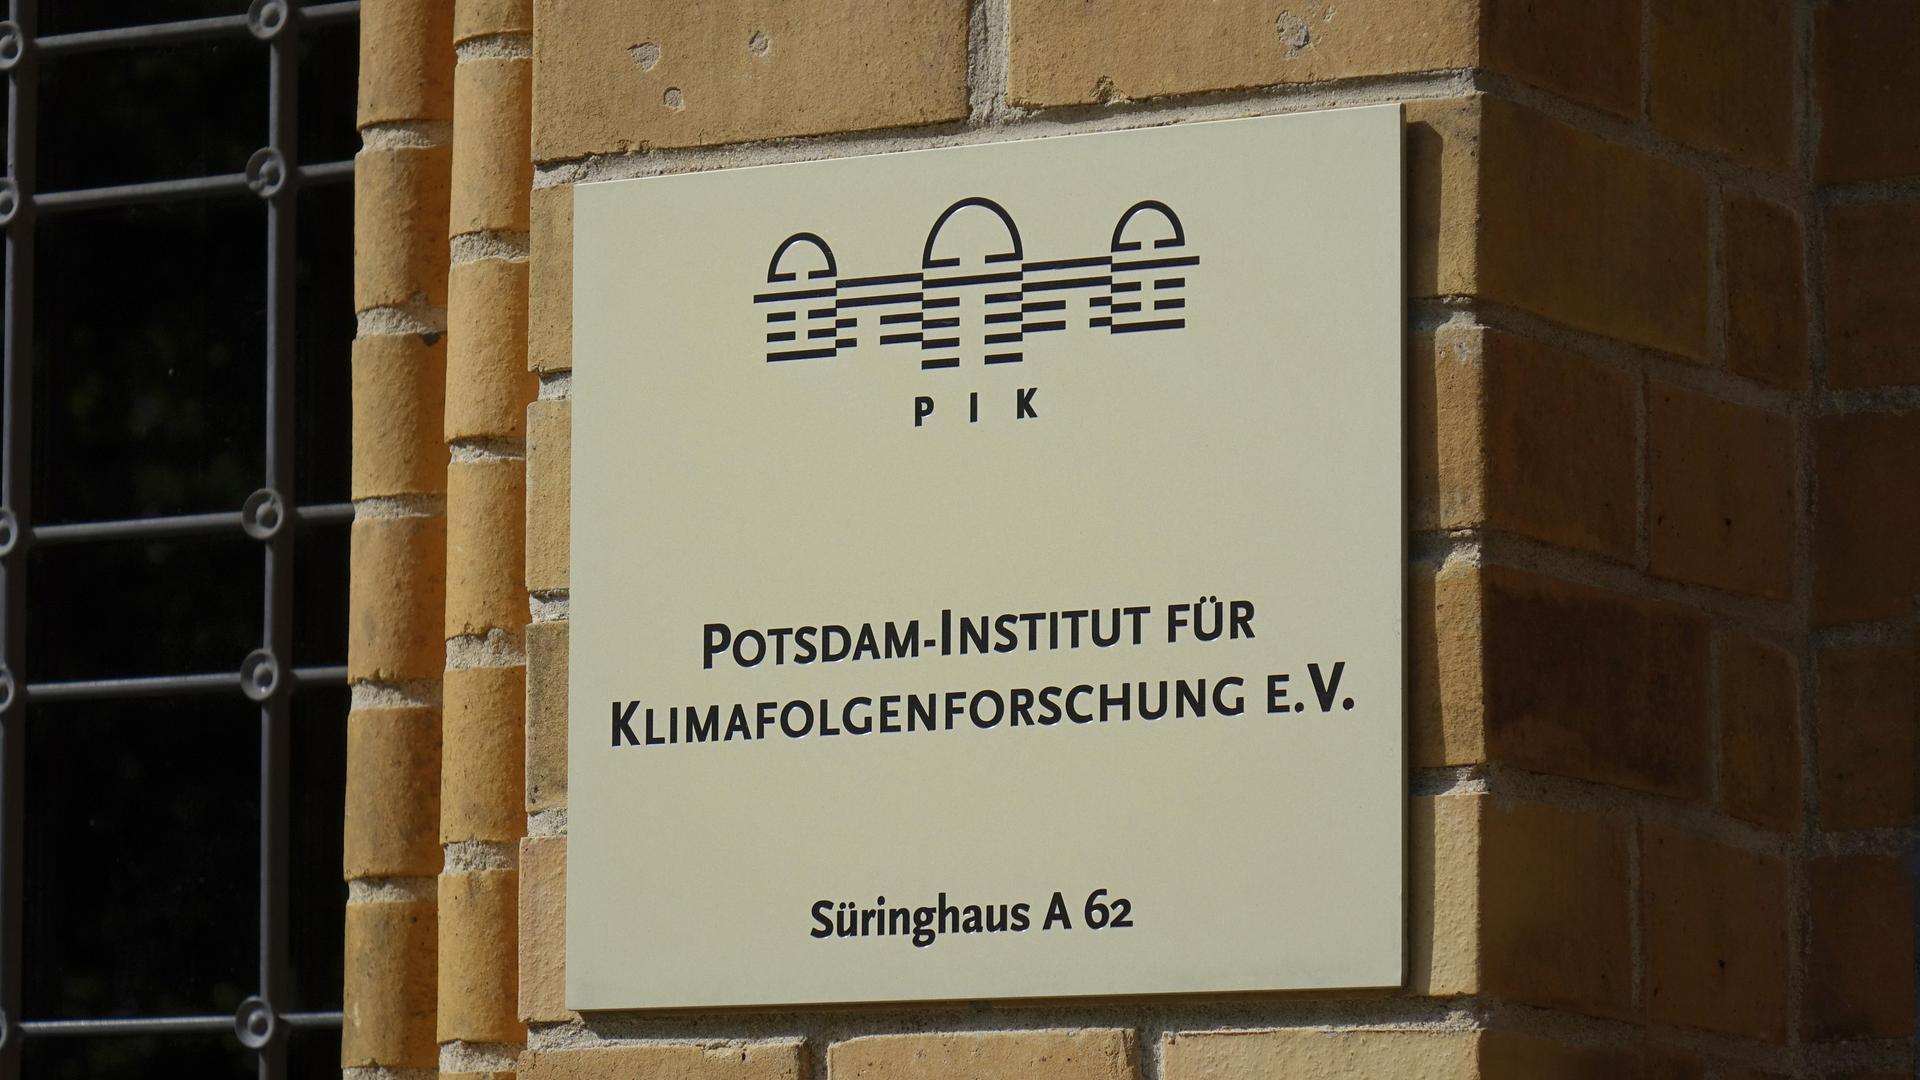 Abgebildet ist ein Schild mit Aufschrift: "Potsdam-Institut für Klimafolgenforschung e.V. Süringhaus A 62".